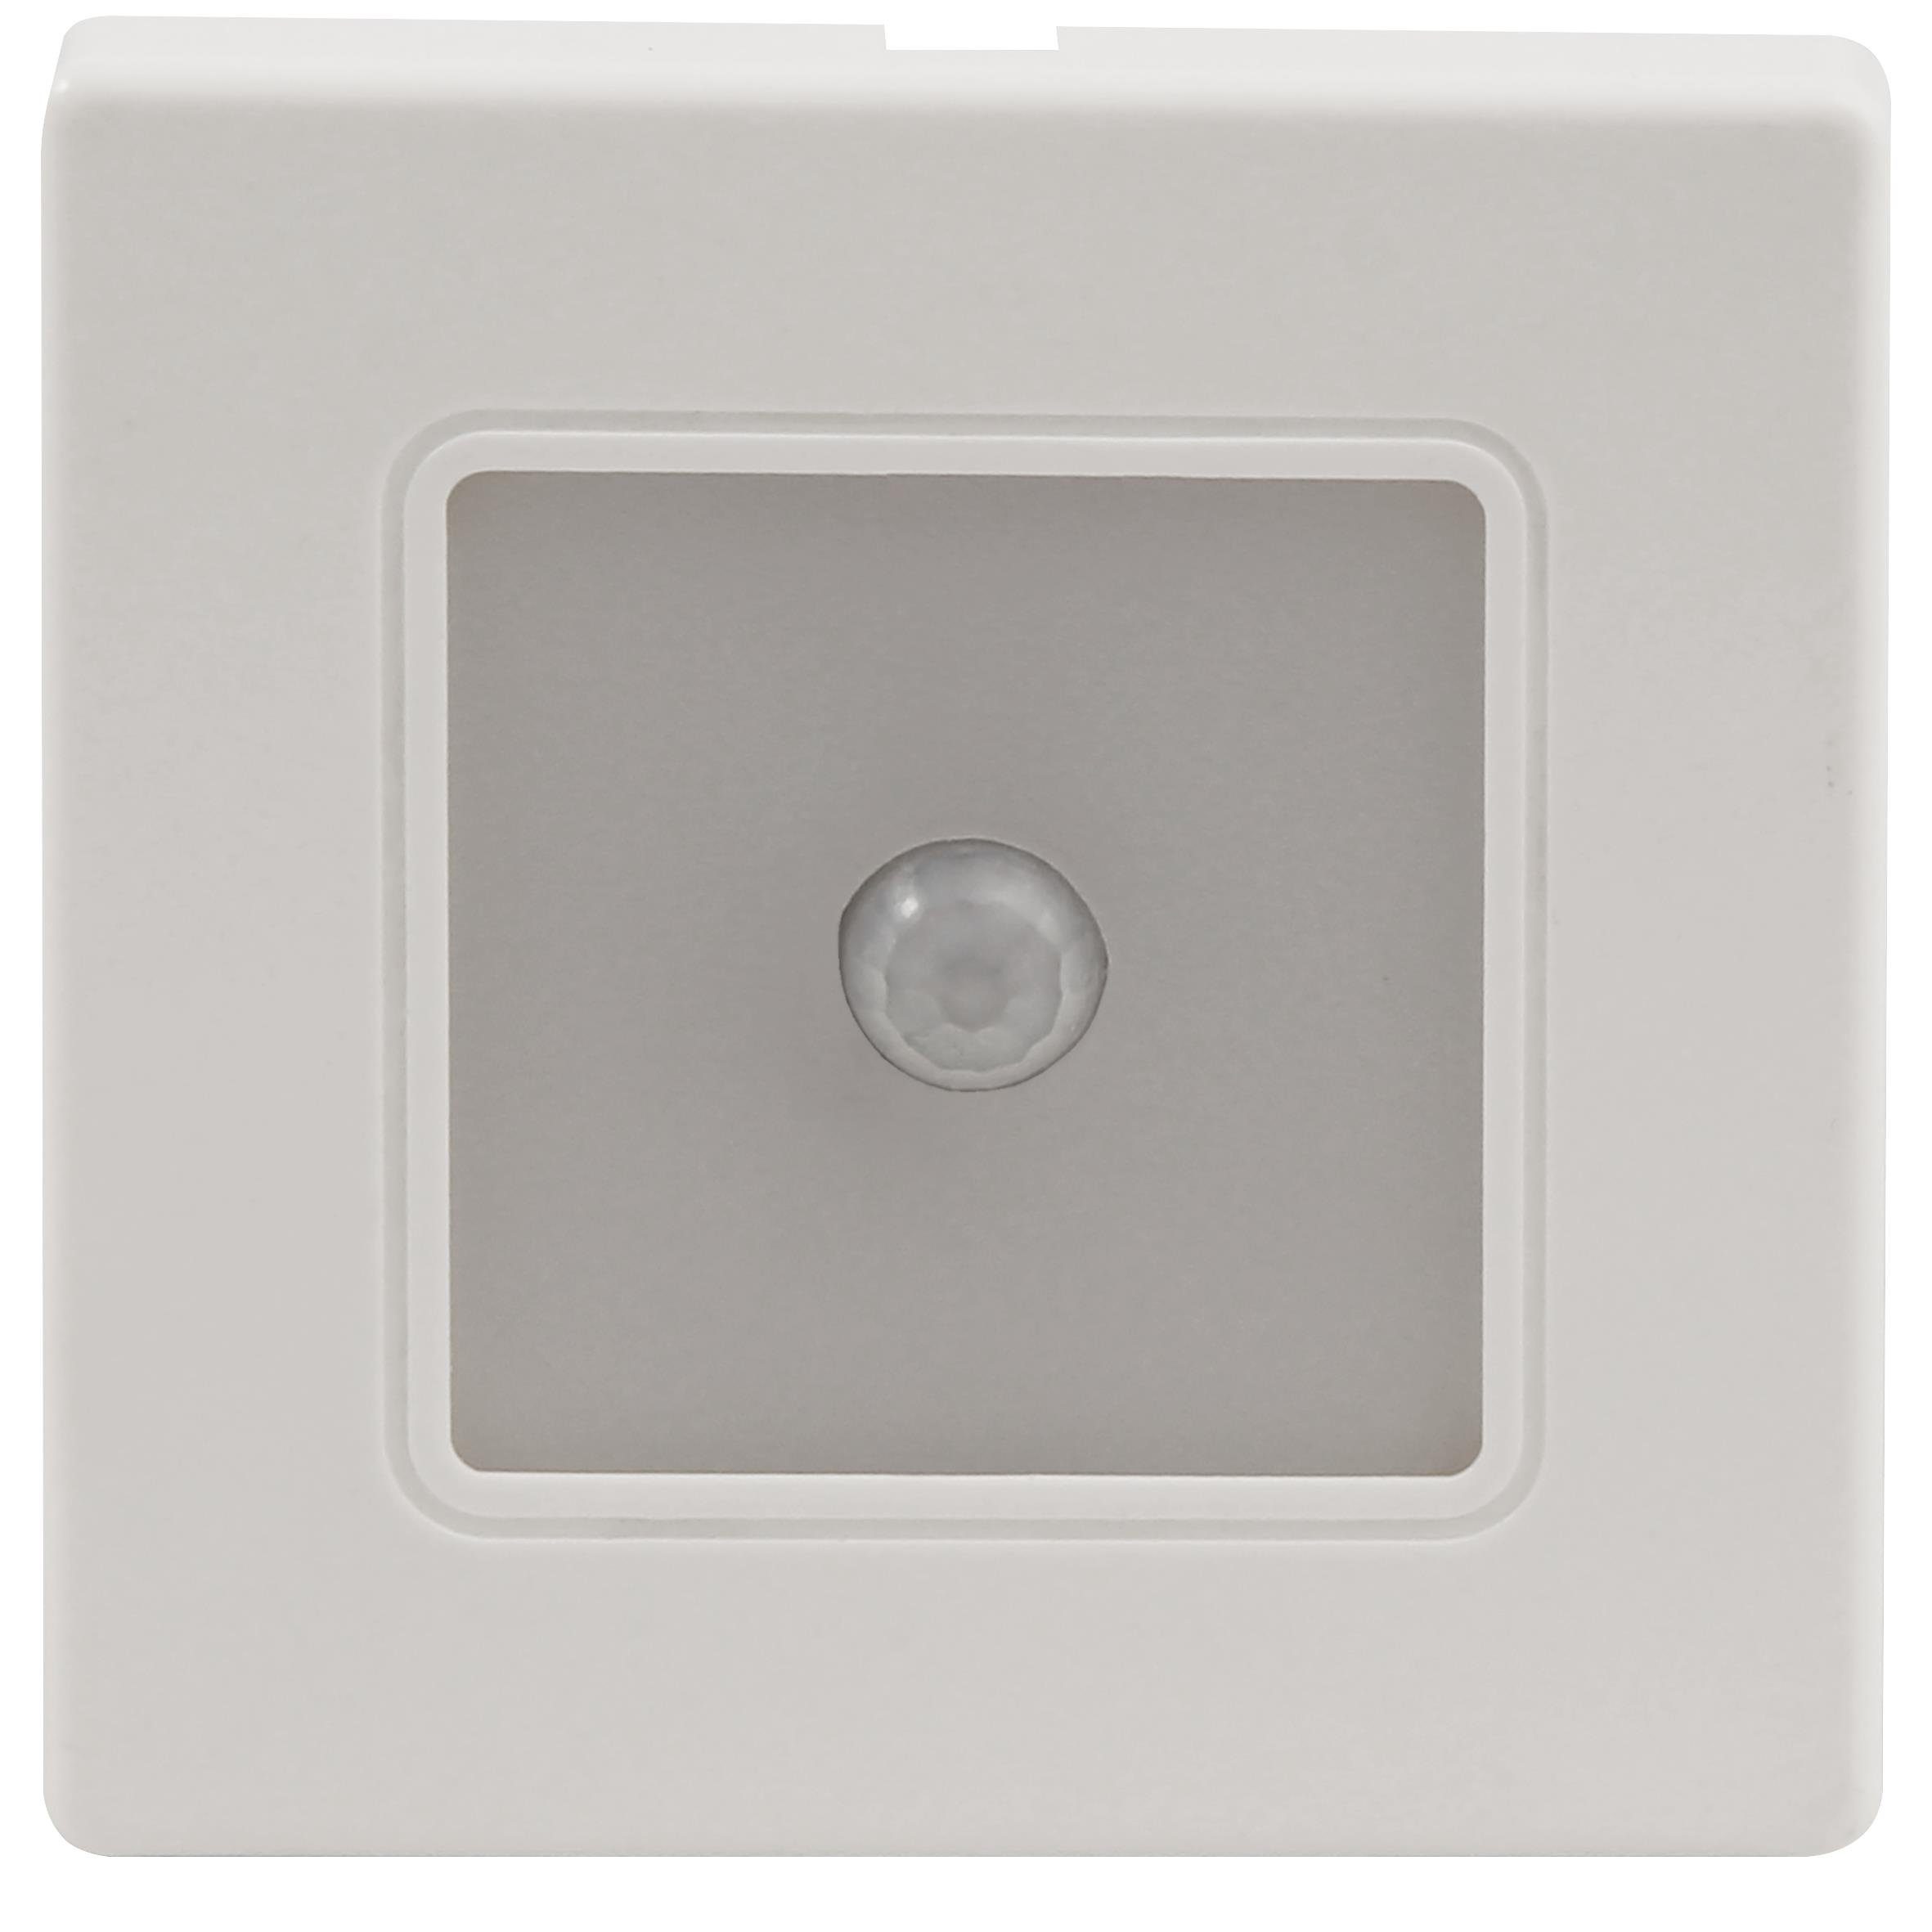 McShine 150lm, 2W, Lichtschalter LWE-86WB LED-Wand-Einbauleuchte McShine warmweiß, weißer